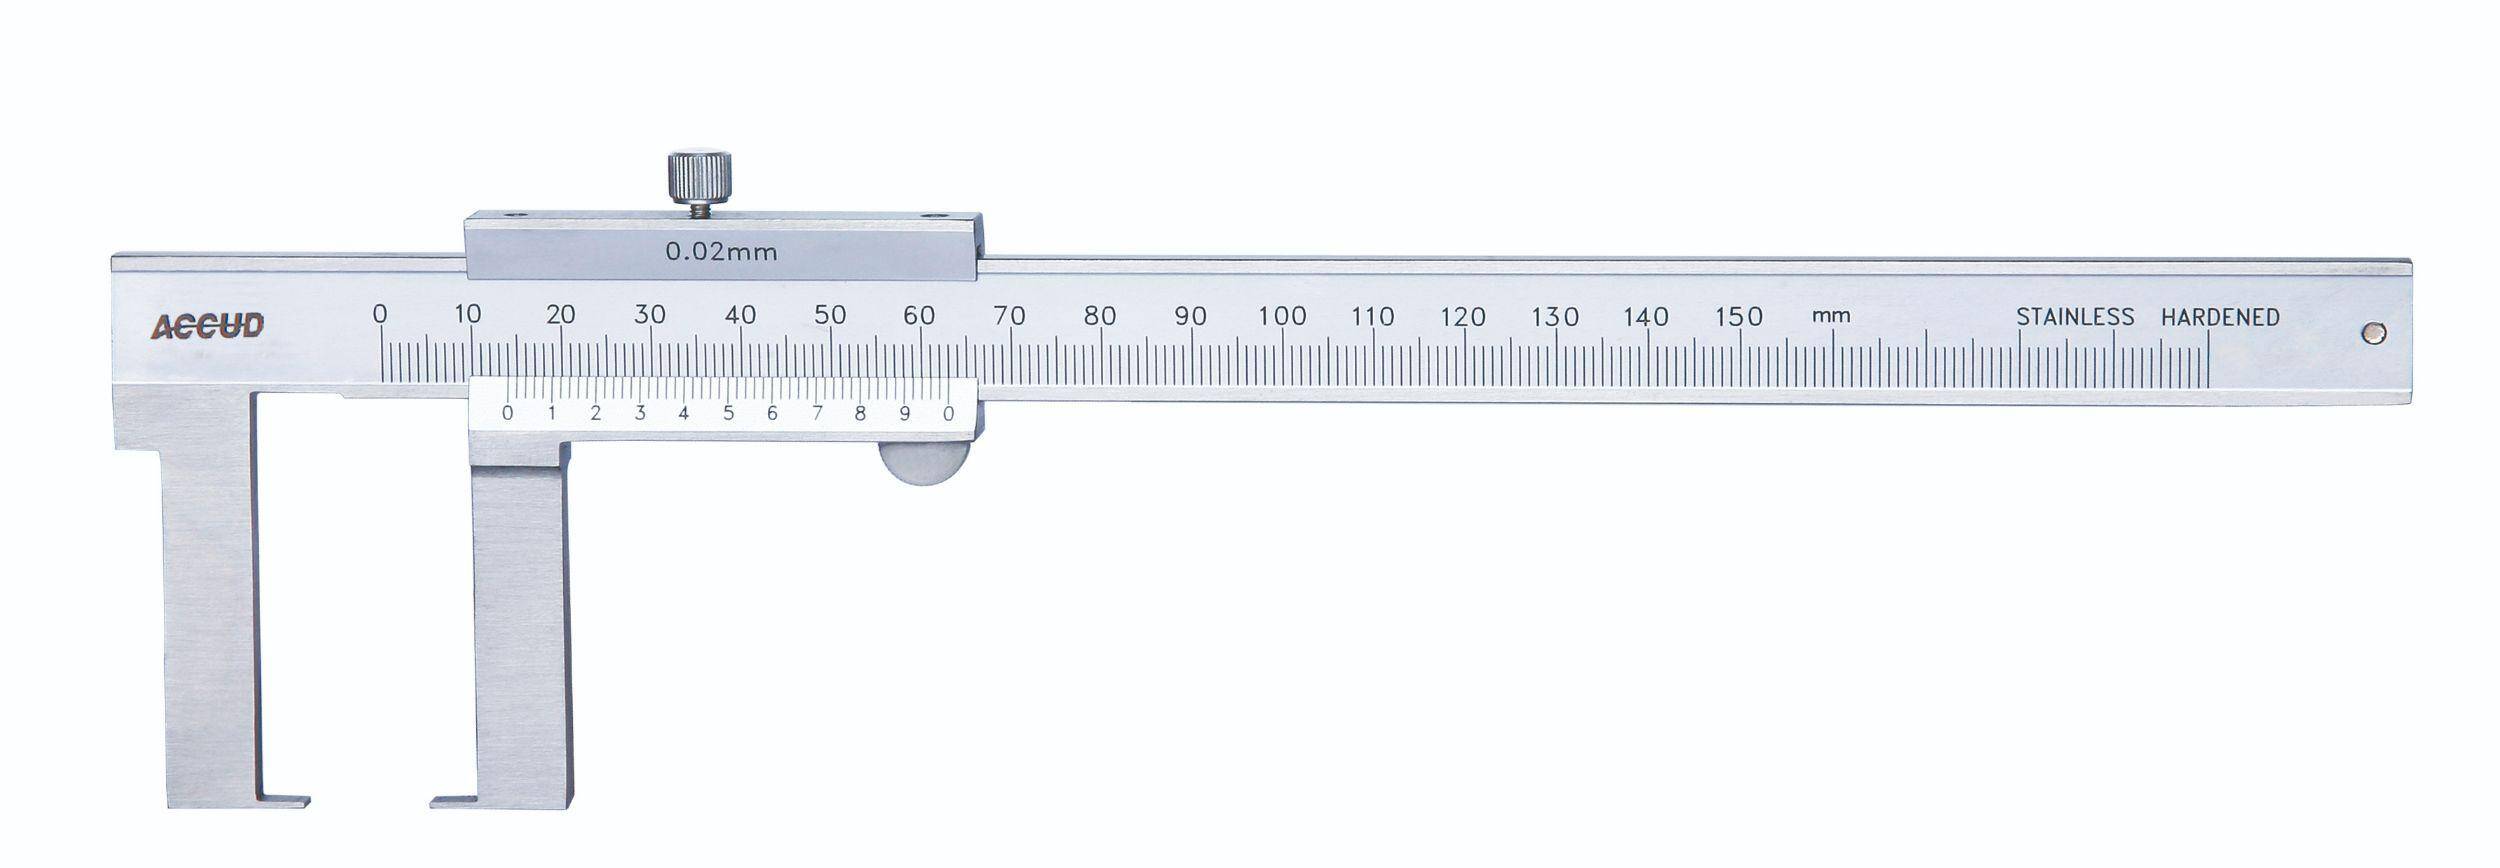 ACCUD suwmiarka analogowa 150/0,05 mm do pomiarów zewnętrznych 143-006-13 (Zdjęcie 1)